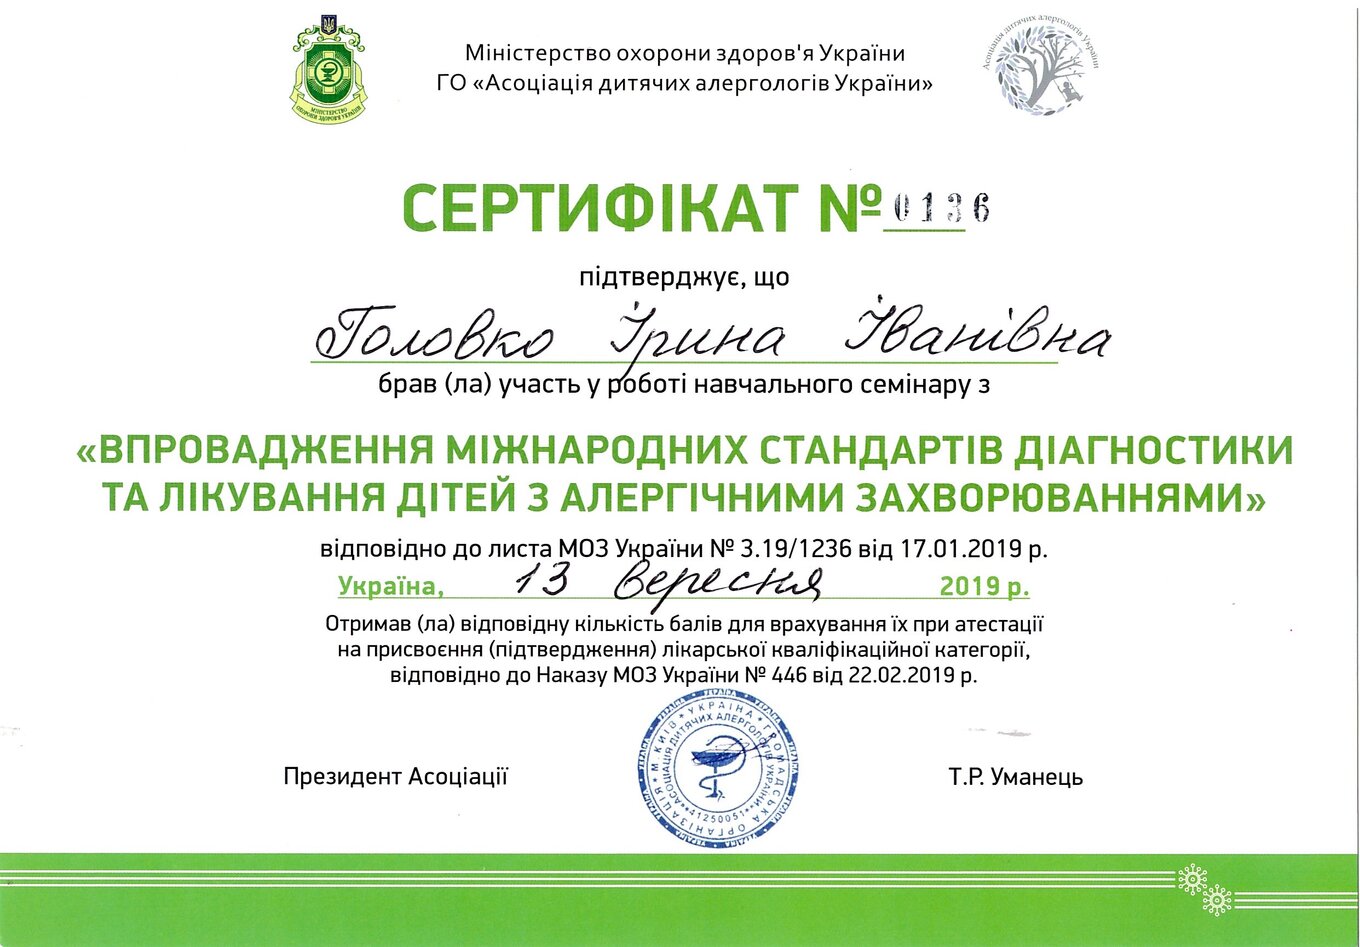 Golovko Irina Ivanivna sertifikat6